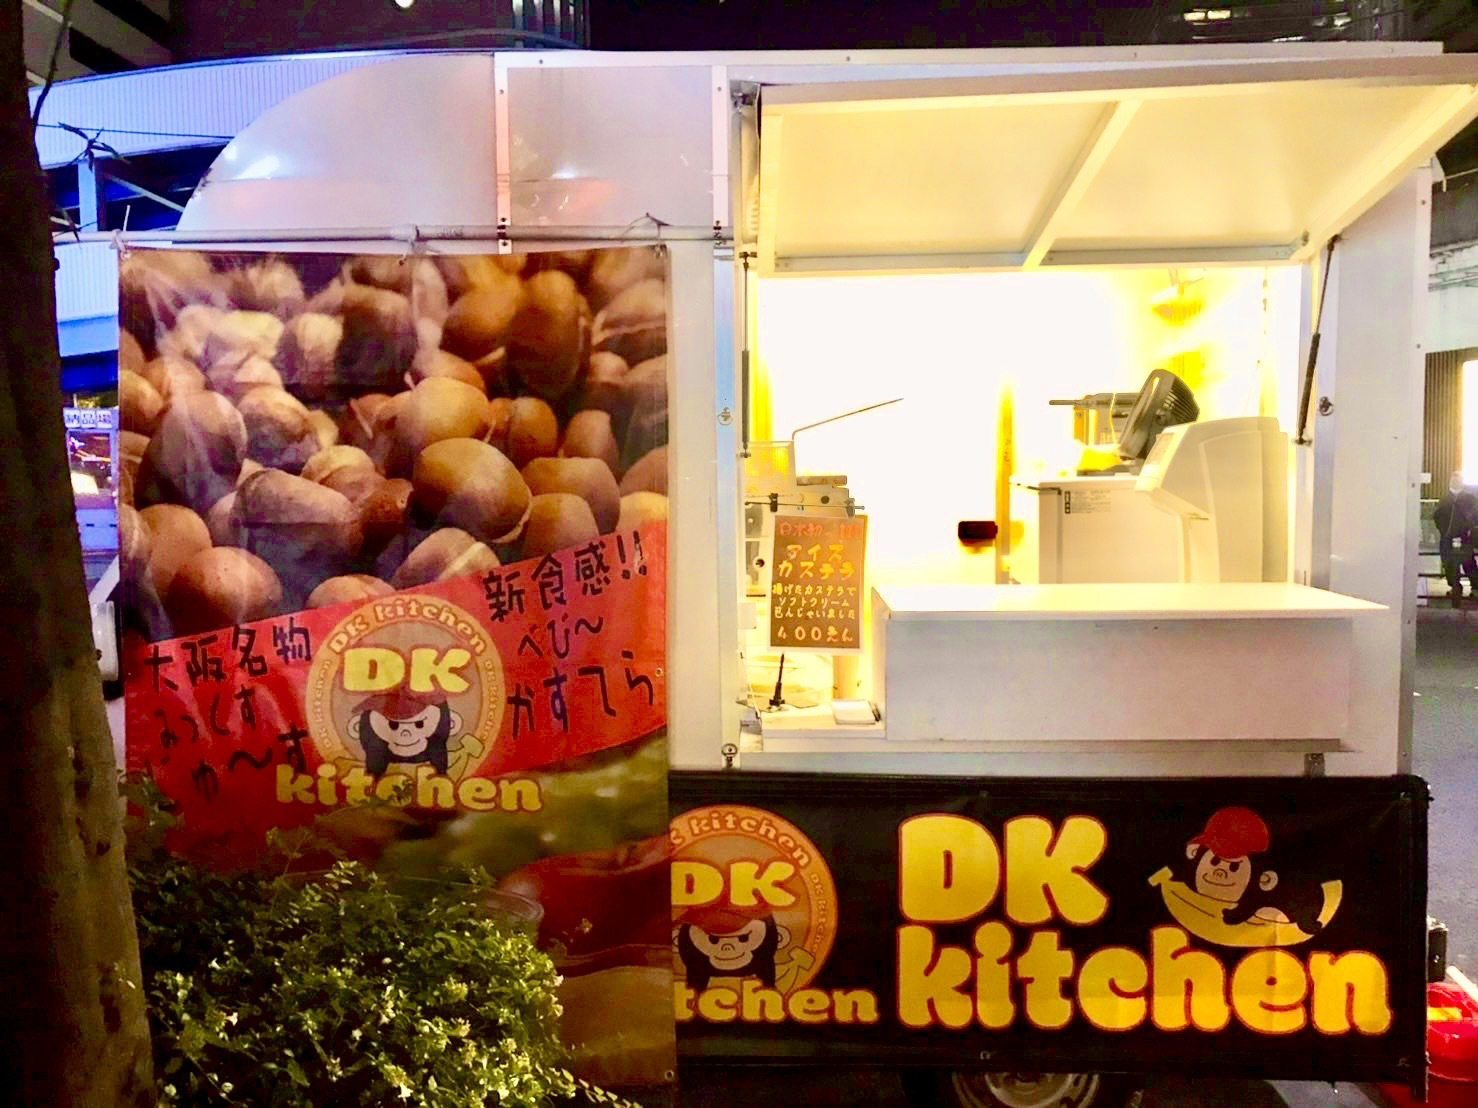 DK kitchen